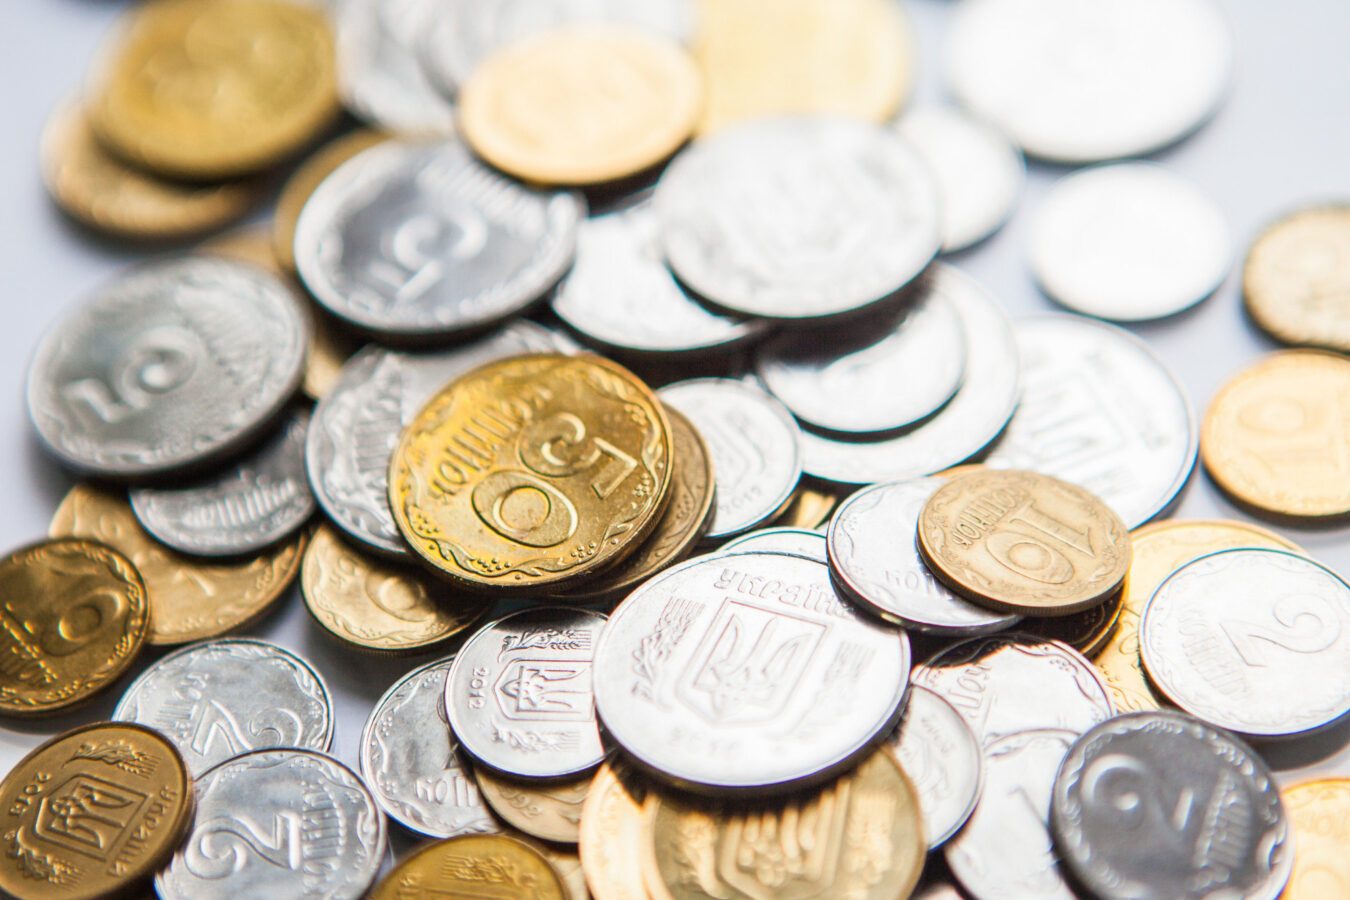 За 5 копеек можно получить 6 тысяч гривен: как найти именно ту монету (фото)